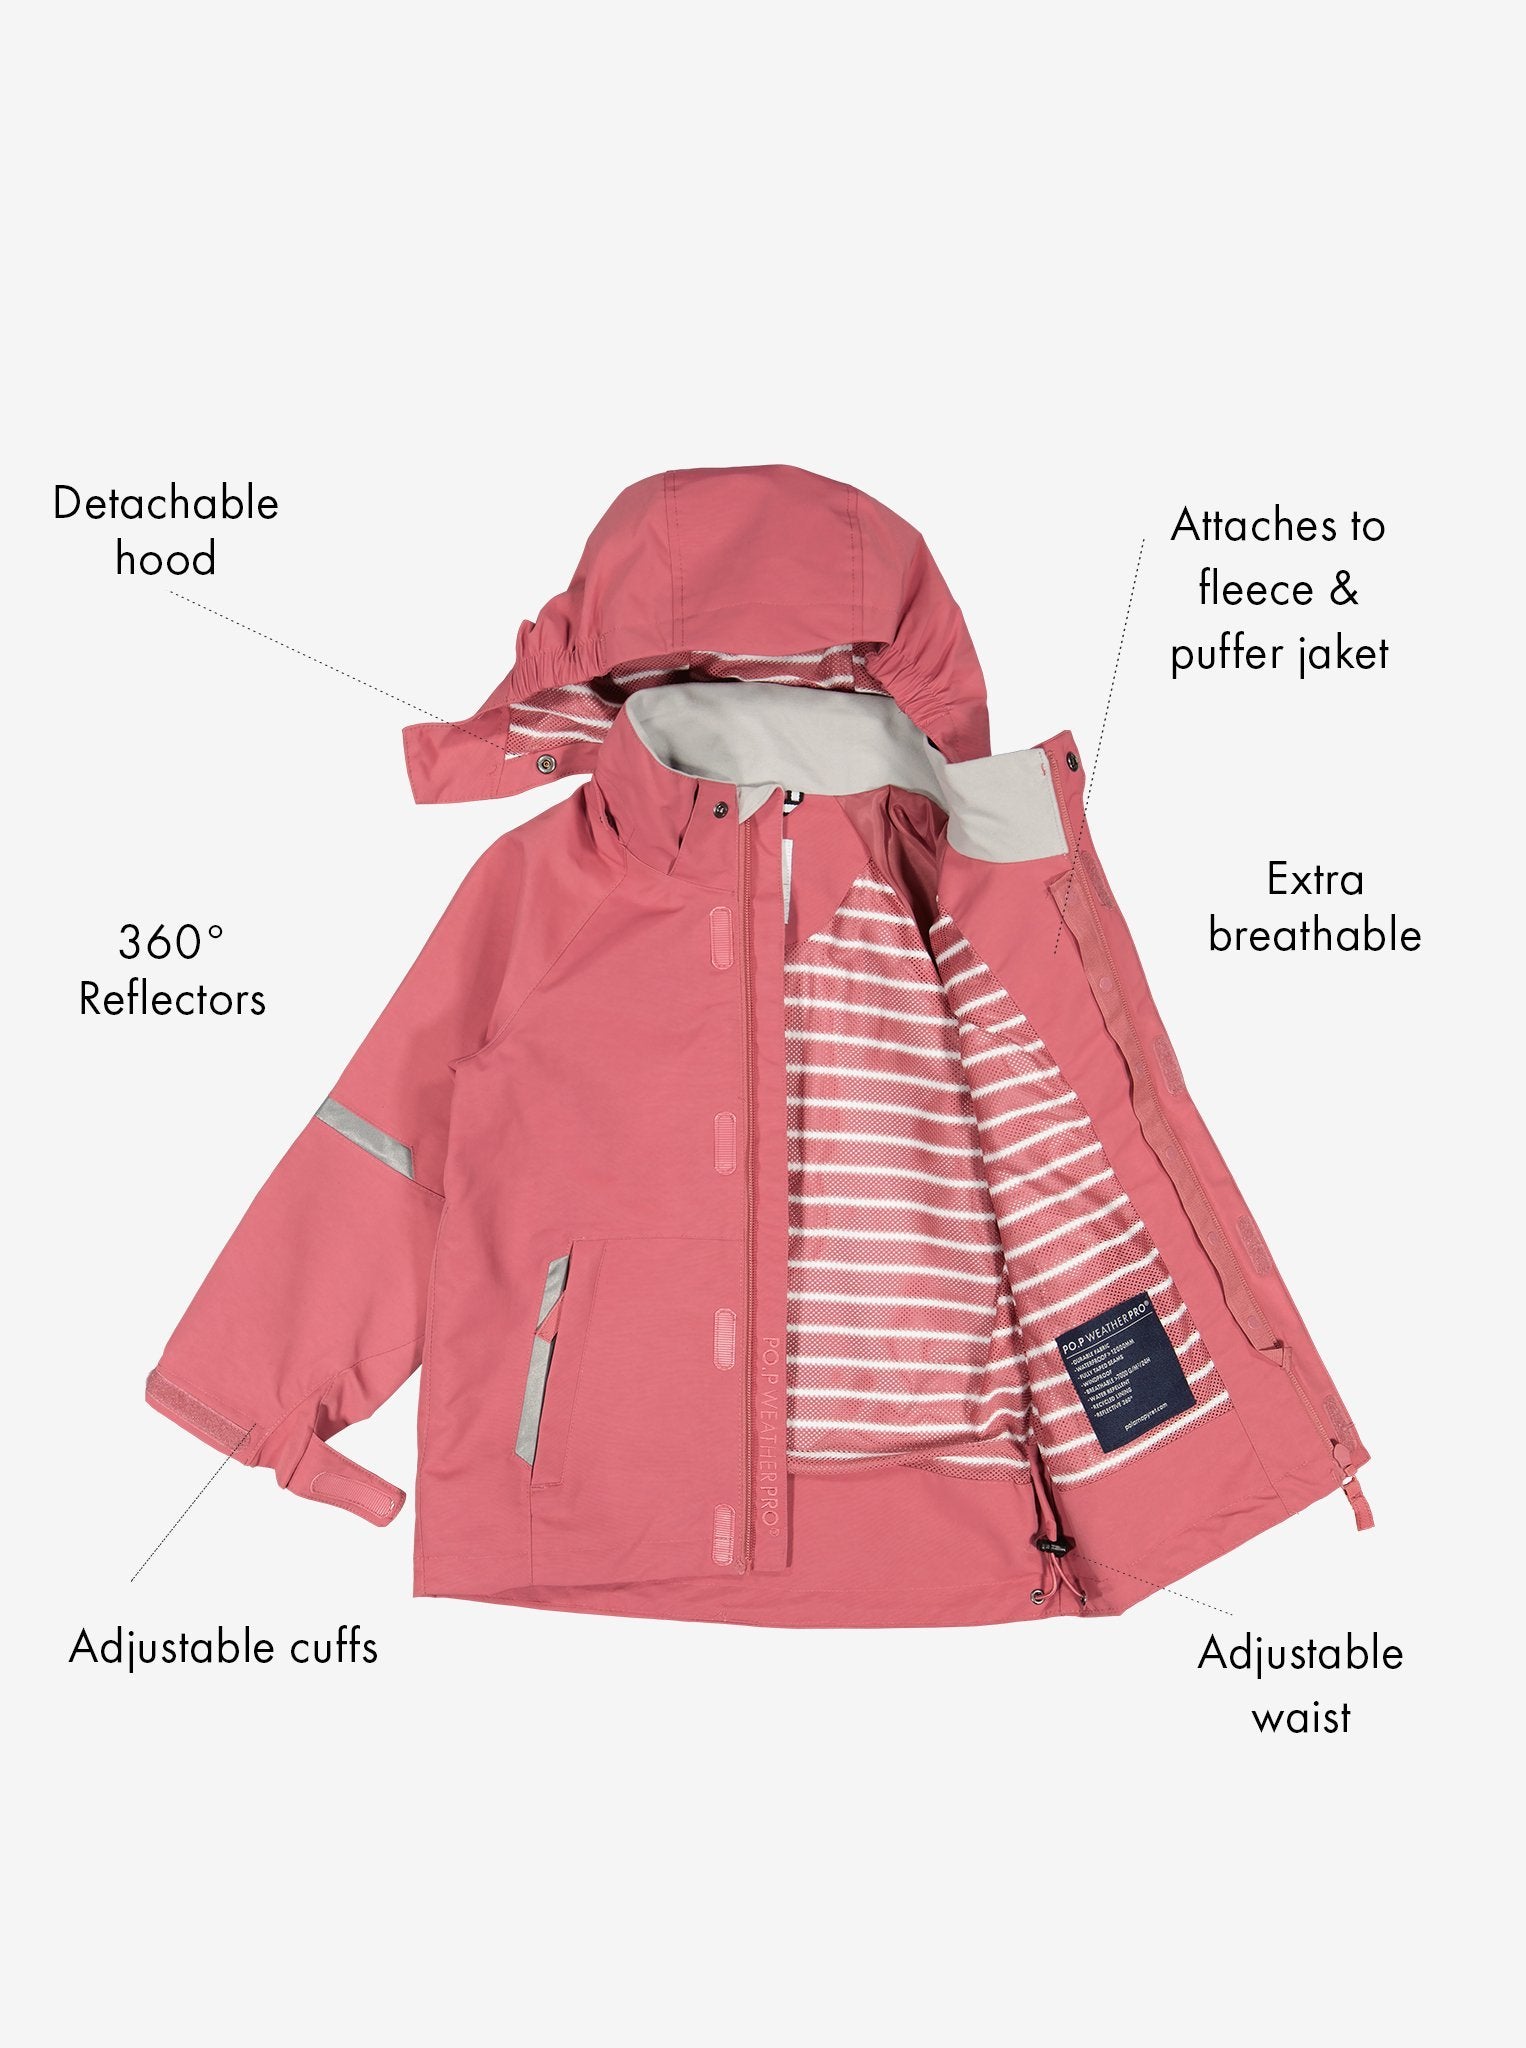 Pink Kids Waterproof Jacket from Polarn O. Pyret Kidswear. Waterproof Kids Jacket 